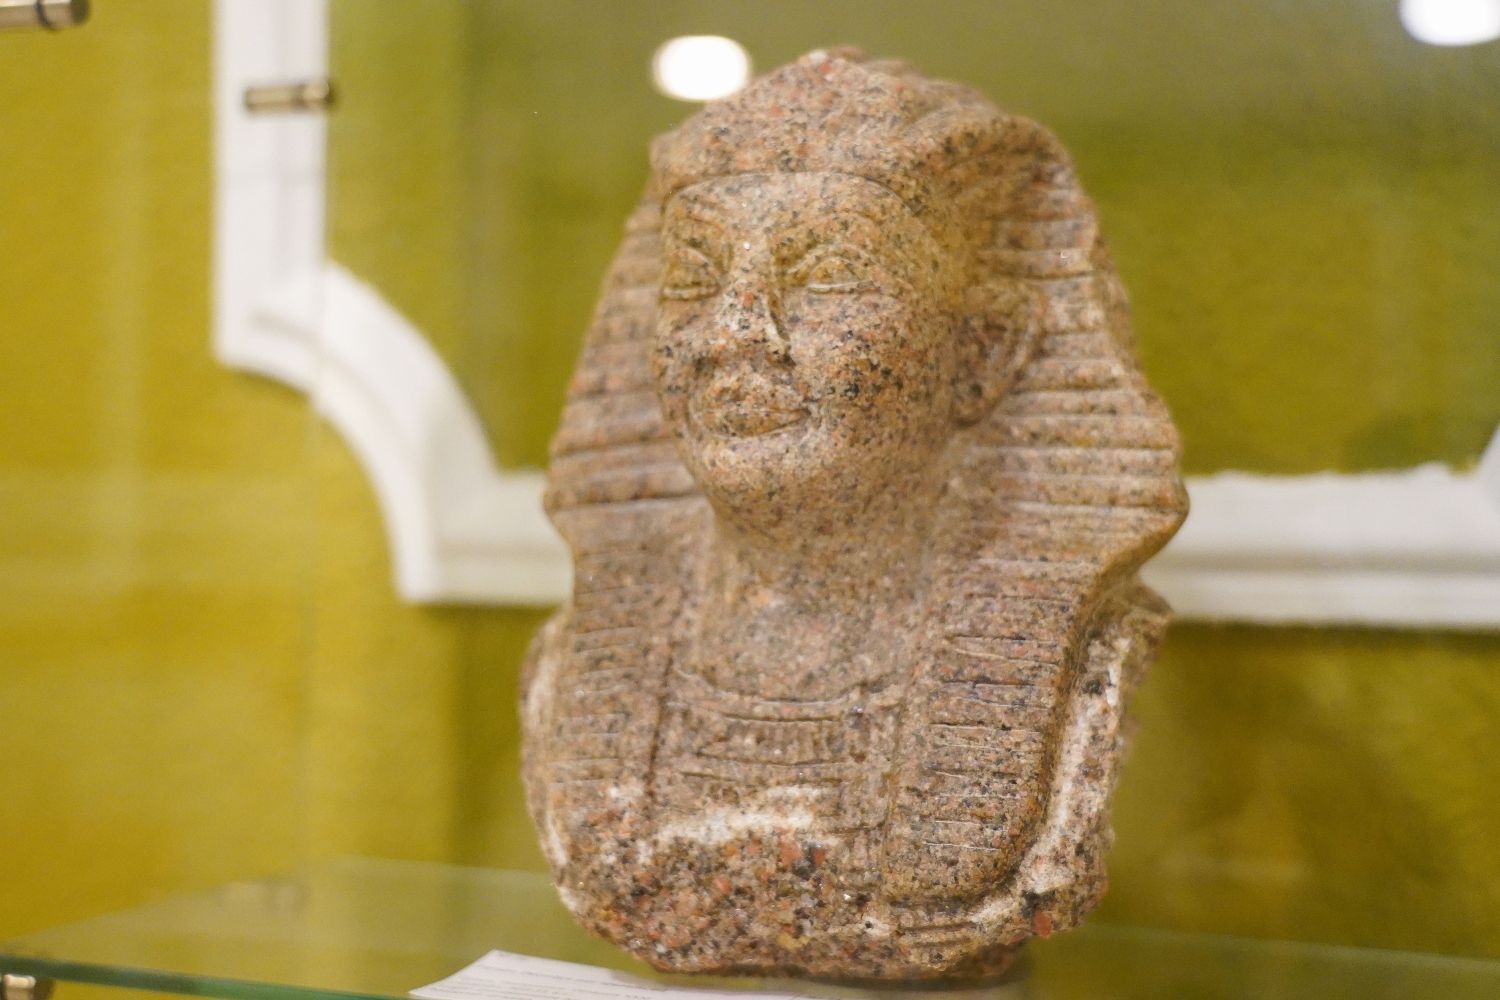  Décimo aniversario del Museo Egipcio de León